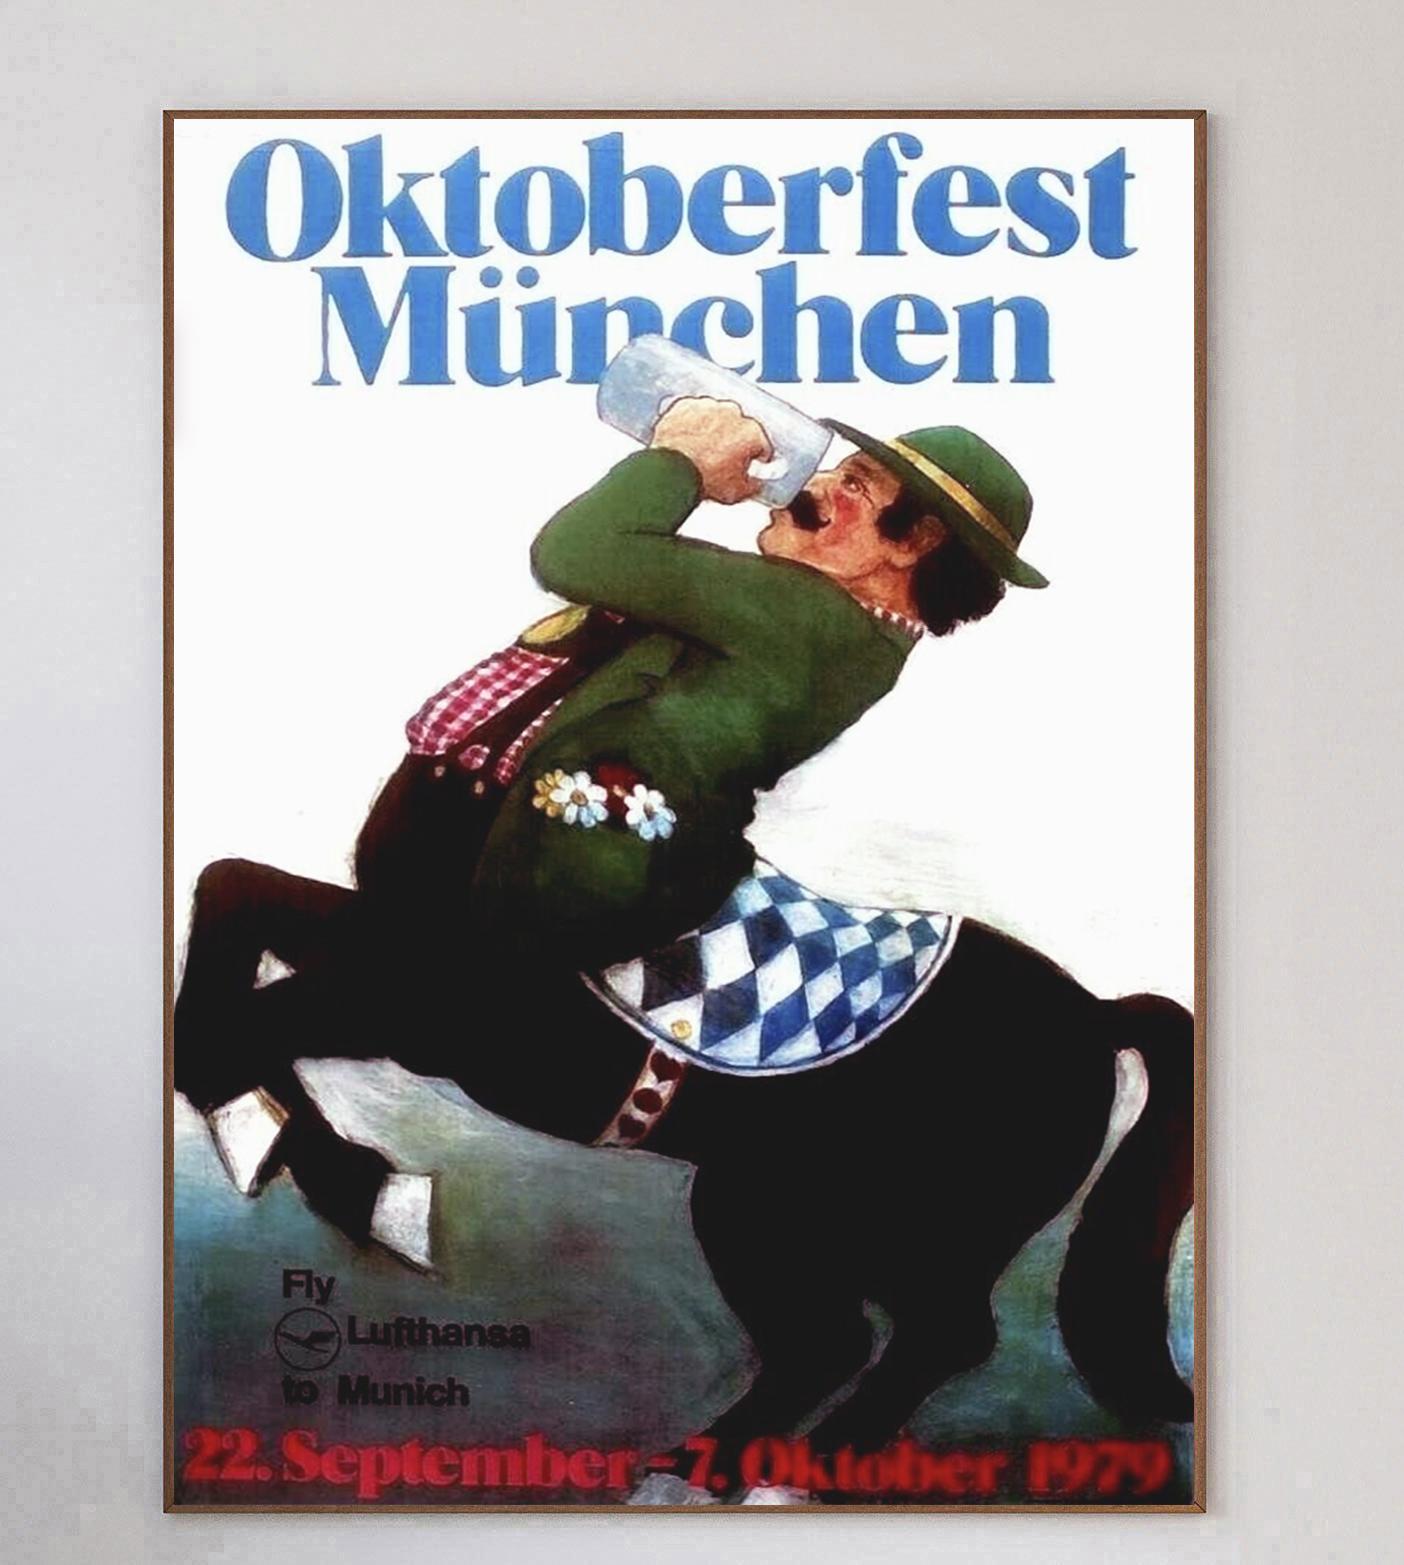 Magnifique affiche représentant un centaure en lederhosen traditionnel buvant une bière, faisant la promotion de l'Oktoberfest Munchen 1979, ou fête d'octobre de Munich. Organisée du 22 septembre au 7 octobre 1979, cette manifestation annuelle est